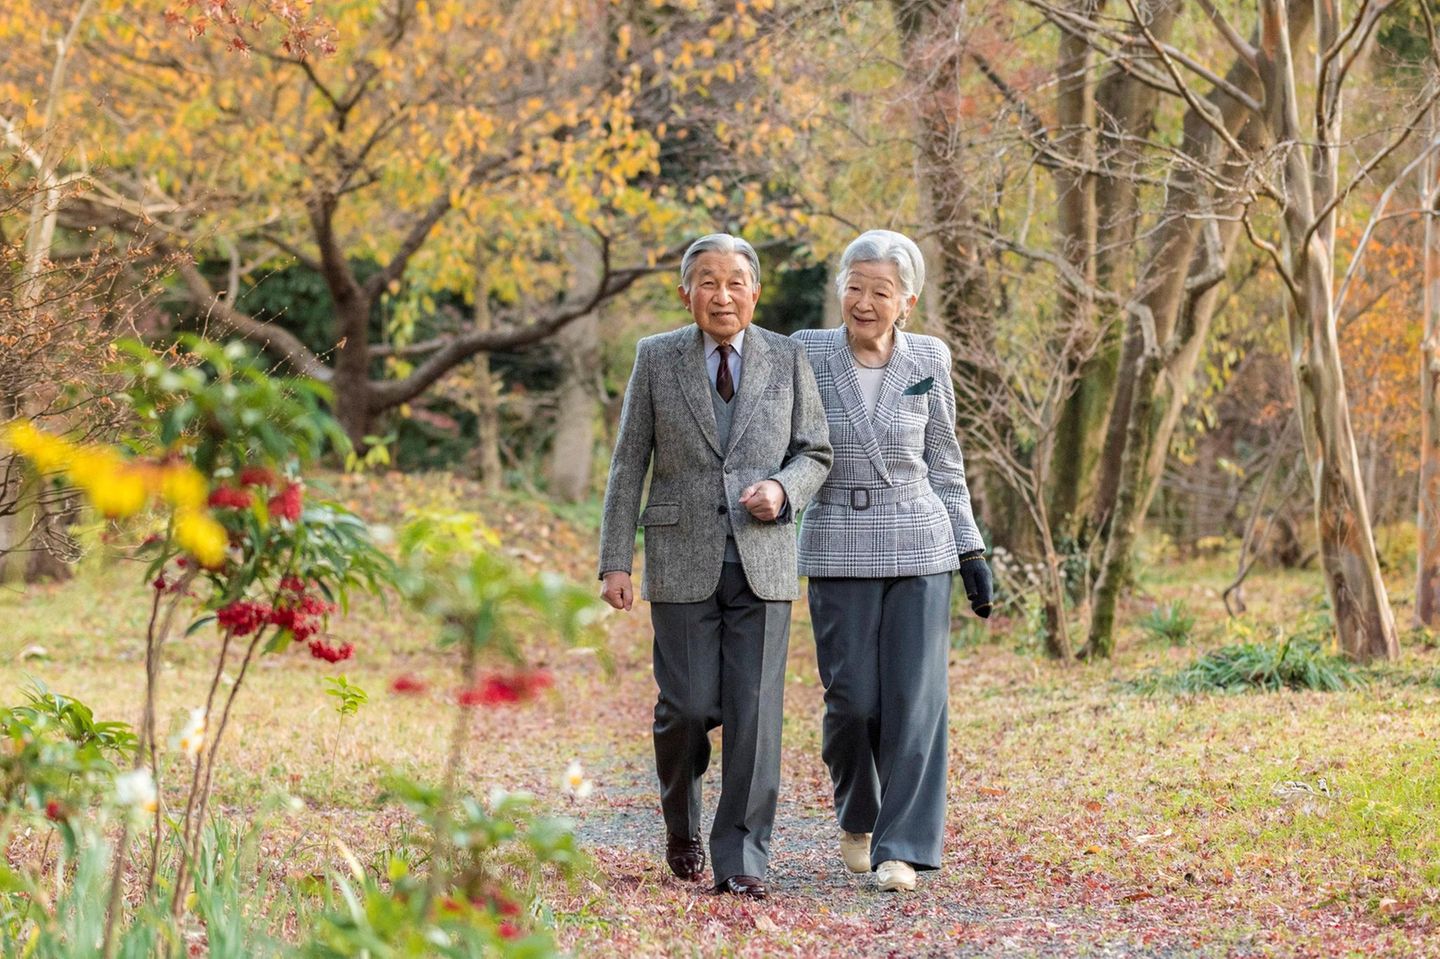 23. Dezember 2017  Kaiser Akihito feiert seinen 84. Geburtstag. Mit einem Fotos, das ihn und Kaiserin Michiko beim Spaziergang im kaiserlichen Palastgarten zeigt, wird der Anlass gewürdigt.